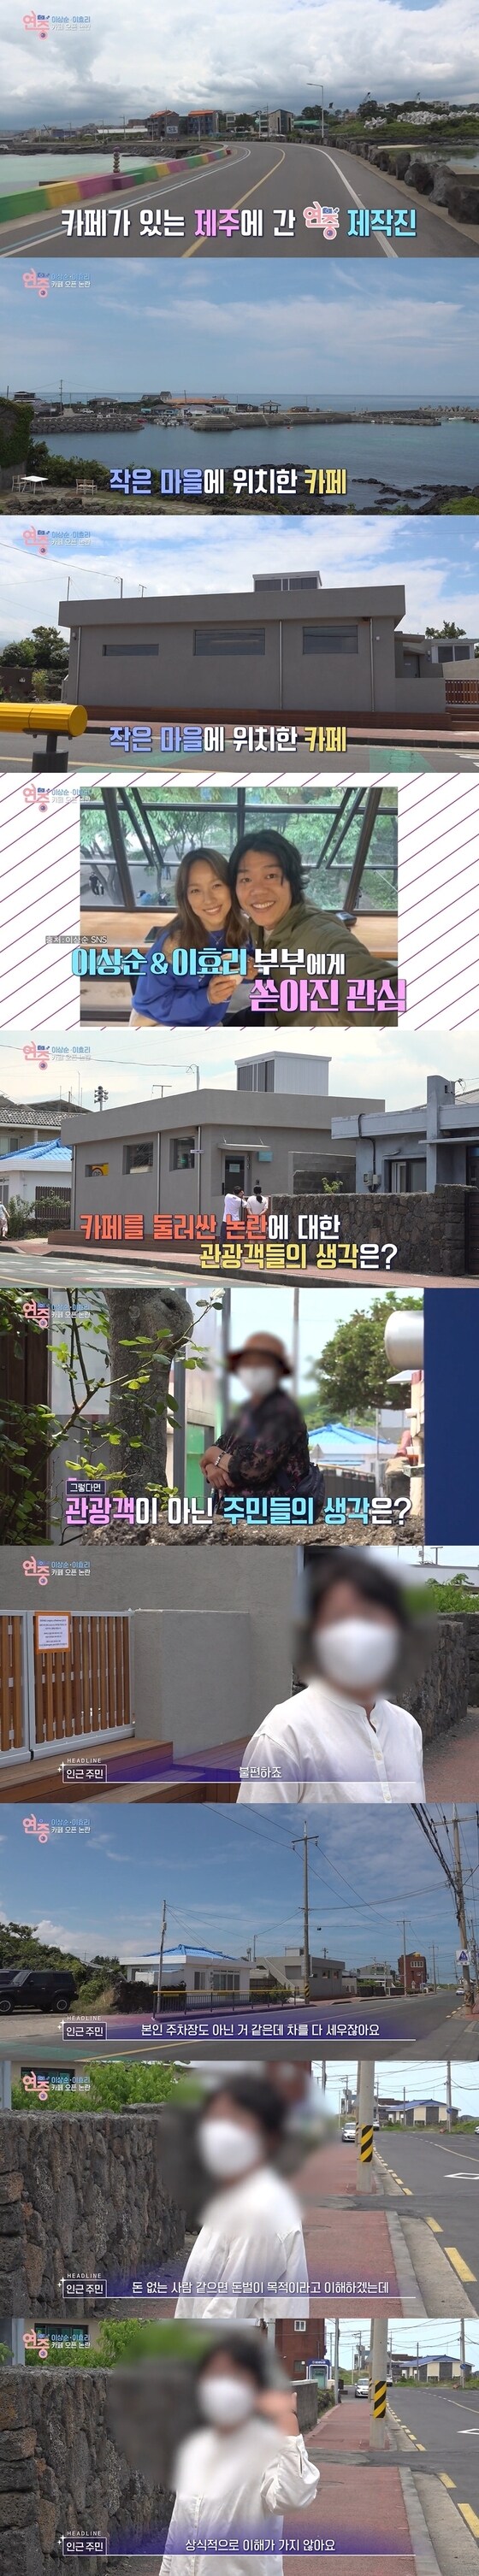 연중라이브/KBS 2TV © 뉴스1